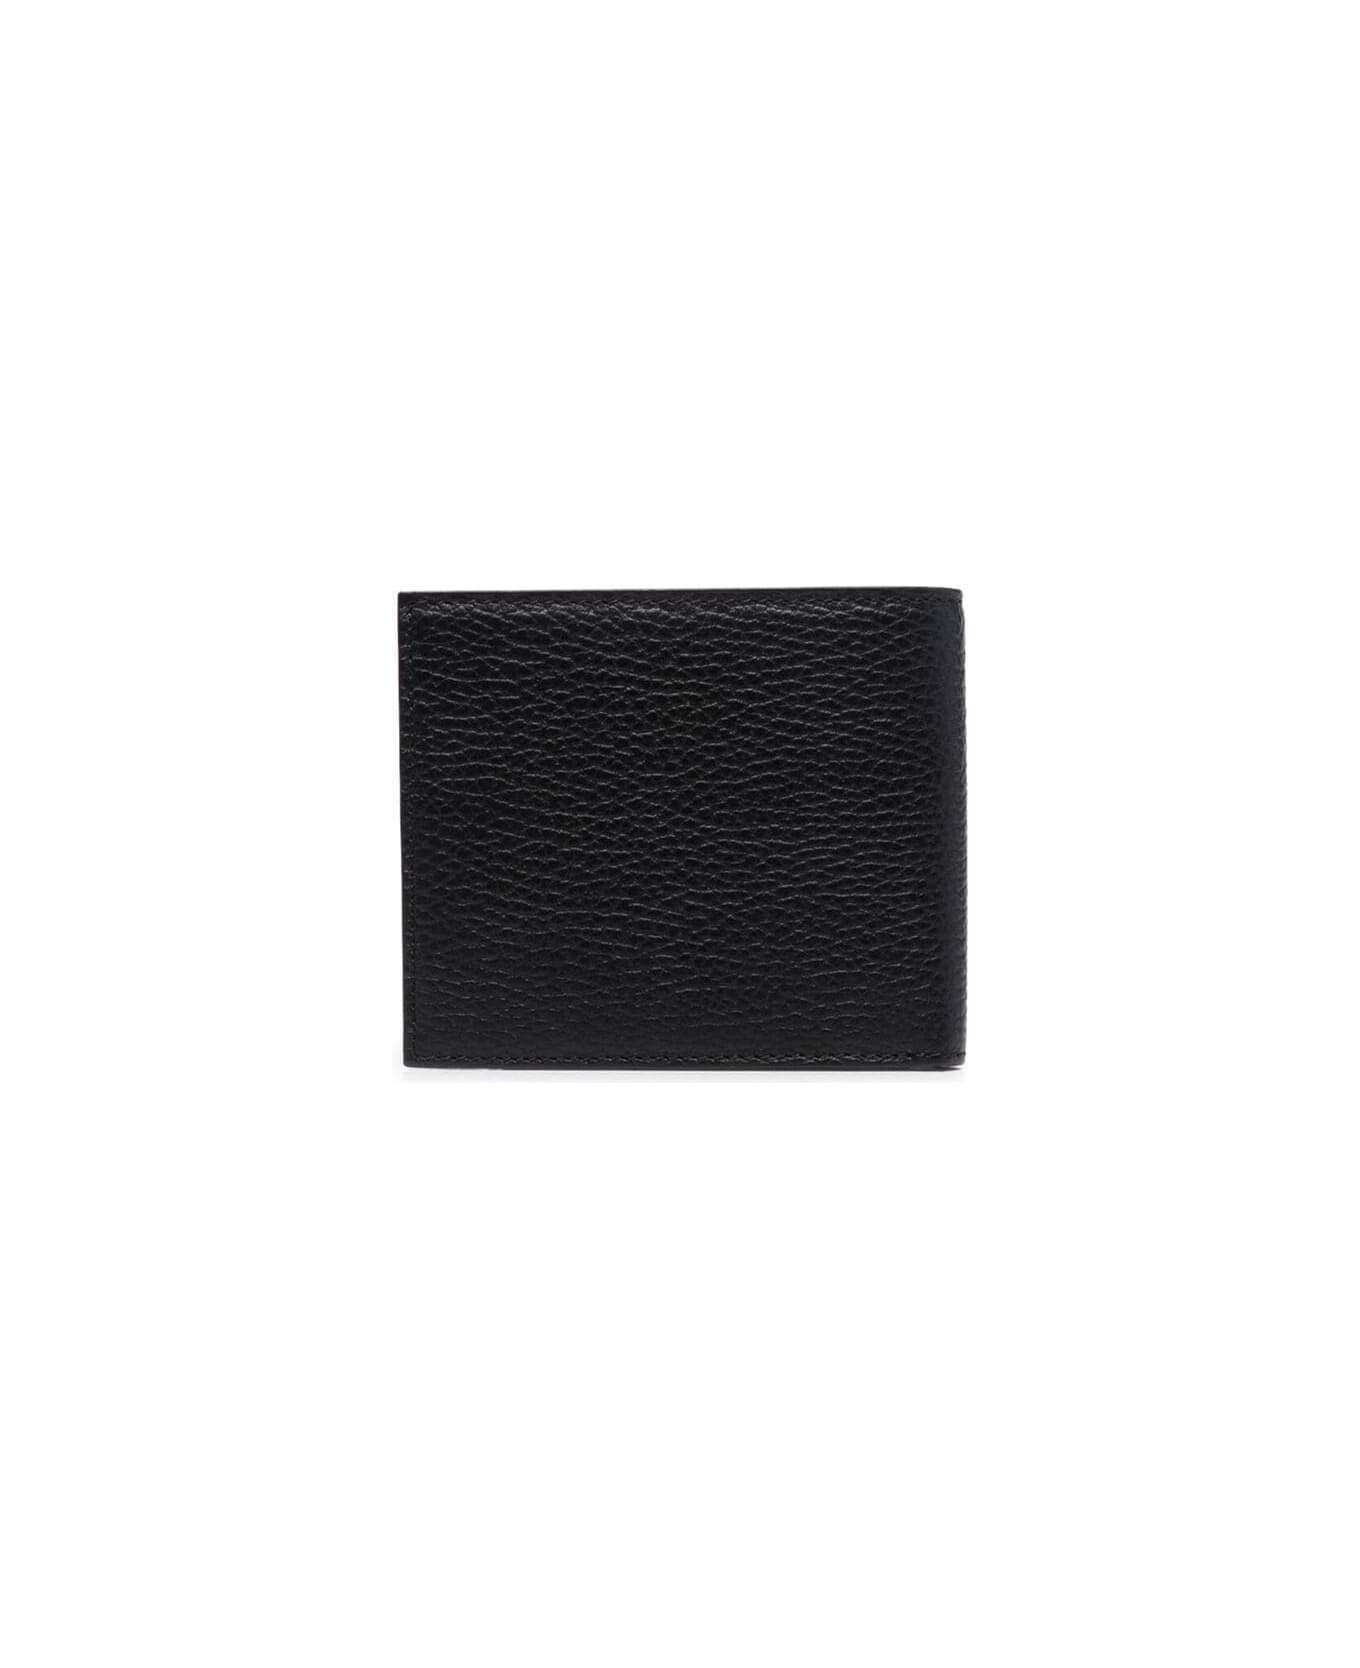 Emporio Armani Bi-fold Wallet - Lt Grey Black 財布